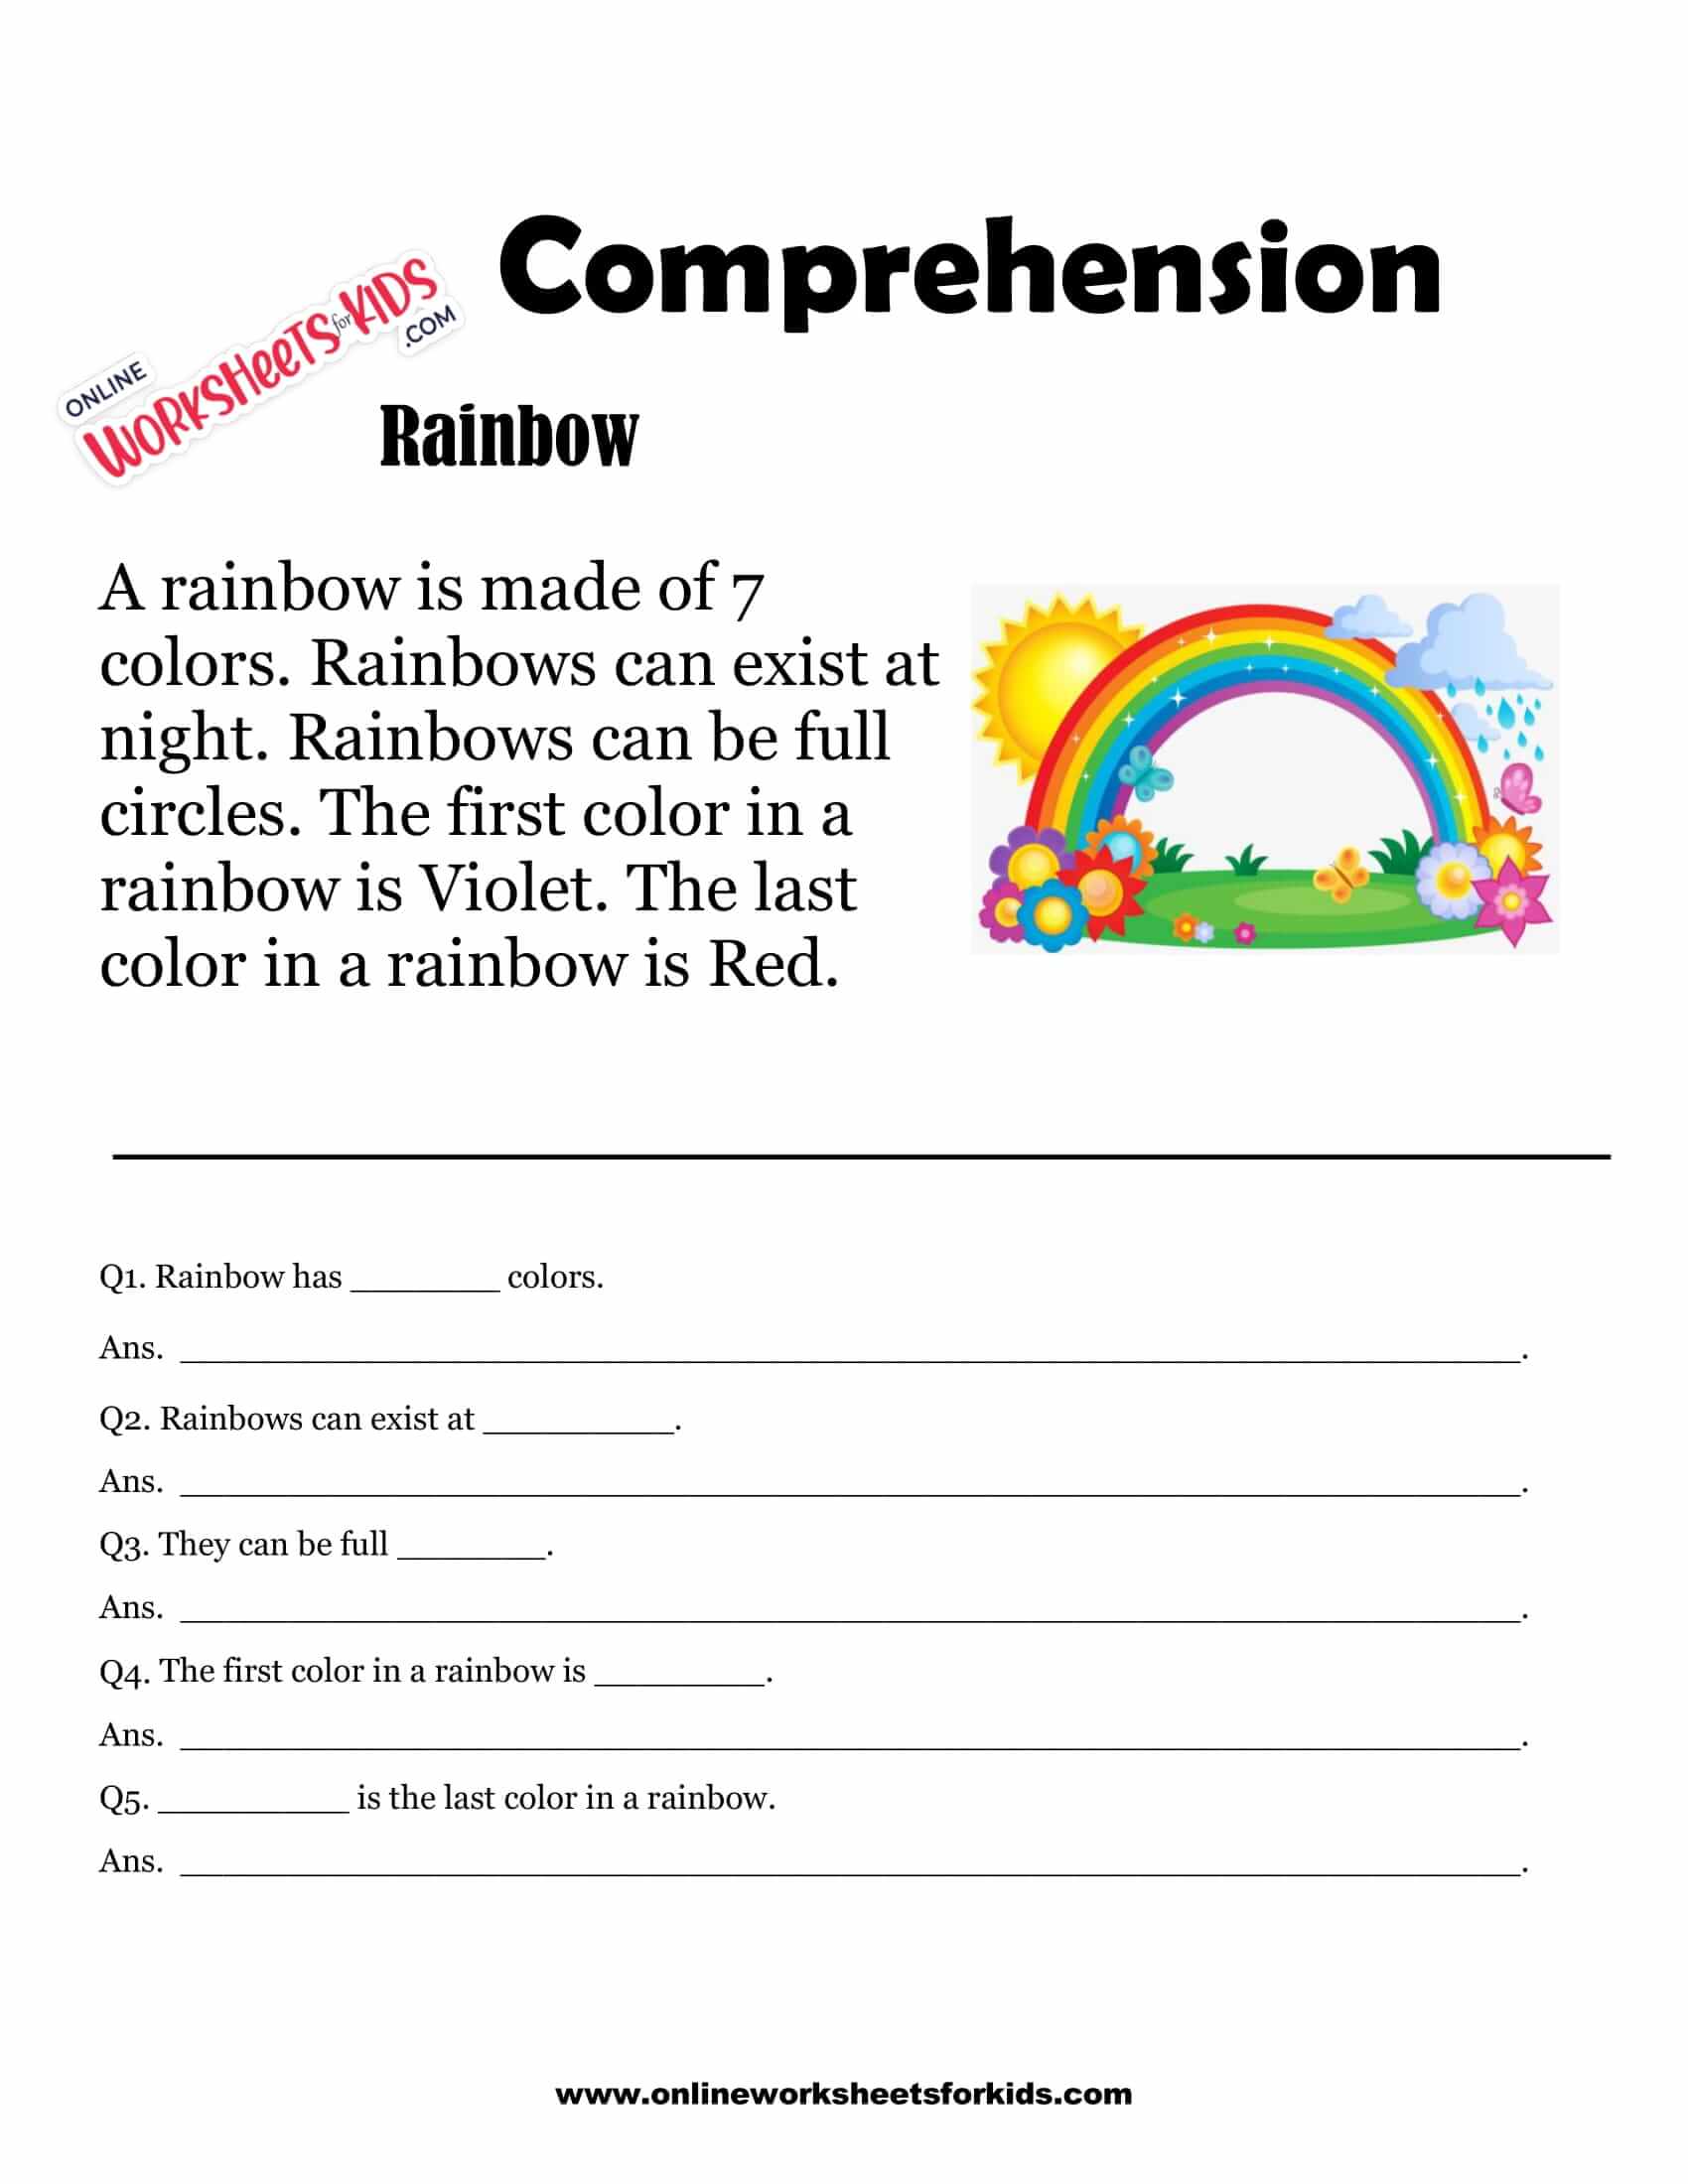 Comprehension Worksheets For Grade 1 Free Printable